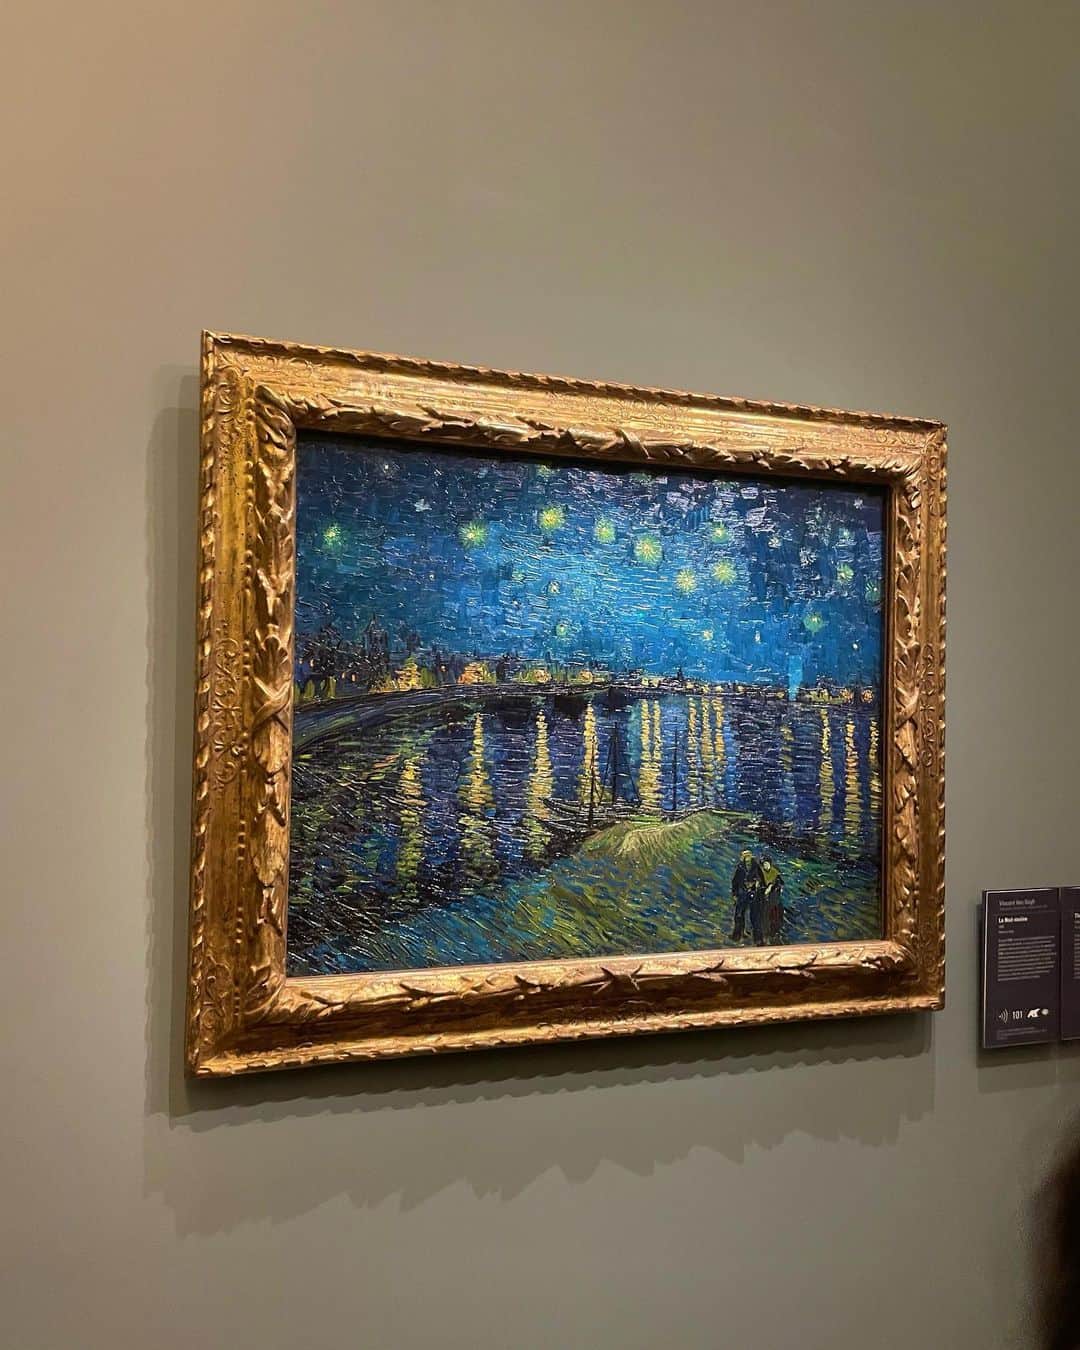 森友里恵のインスタグラム：「📍Musée d'Orsay 📍The National Gallery  ❶Starry Night Over the Rhône🌙 本当に美しい。 3年前にオルセー来た時も感動したけどまた感動した🥺 もうとにかくこれに関してはI have no words. 実際に見て感じて欲しい。  そして何より修正技術もすごいな、と いつも美術館にきたら思う😂 古い絵をこんなにもずっと 綺麗に保ってるってすごいなぁ。って  ❷Sunflowers ゴッホが南フランスの黄色い家で描いた一作のひまわり🌻  ゴッホはこのひまわりには希望を持っていて、 友達が欲しくてこの絵を描いたんかなぁ。 とか思って見ると、孤独だけど、どこか可愛くも思う😂 オレンジ色の単一の色でここまで 色んな表現できるのがすごい。羨ましい。  ❸Van Gogh's Chair 私は日本の浮世絵も昔から大好きで、 それまでゴッホは暗い絵を描いてたけど 浮世絵のカラフルな絵を見て とても感銘を受けて色鮮やかな絵を描くようになり 明るい南フランスの黄色い家に引っ越したみたい😚  ところどころに日本が感じられるから 私はゴッホの絵が好き。  この椅子の床は浮世絵の特徴のひとつとして 遠近法をあえて無視して、 鑑賞者を見せたいものに集中させる というテクニックを使ってるみたい☺️  ❹Deux crabs これはゴッホの退院した後にこの作品を描いたと言われていて、日本の雑誌で見た北斎のカニの版画に インスピレーションを得て描かれたものと 考えられてるカニさん🦀  ❺Danseuses bleues ドガ(Edger degas)のバレリーナの絵は本当に素晴らしい。 彼は人体の瞬間的な動きを捉えるのがとてもすごかったみたいで一瞬のちょっとしたポーズをデッサンでサッとかける技術。 だからこんなにも高揚感があるんだなぁ。 あと、ドガの光の使い方光の描き方が私はだいすき。 家にもドガのこの絵飾ってる😍  私はアート見る時はまず最初に何も 見ずにいって感覚だけで見るのが好き。 先入観を持ってみたくない。ただ感じたい😂  そして何回もその美術館に行ったら アートの歴史や背景を知るのが好き😆 その時期の風景、歴史も知れて本当に楽しい😚  #paris#france #musée#museedorsay  #nationalgallery#london #starrynightovertherhone  #vincentvangogh#edger  #degas#art#パリ美術館 #オルセー美術館#フランス短期留学 #ゴッホ」